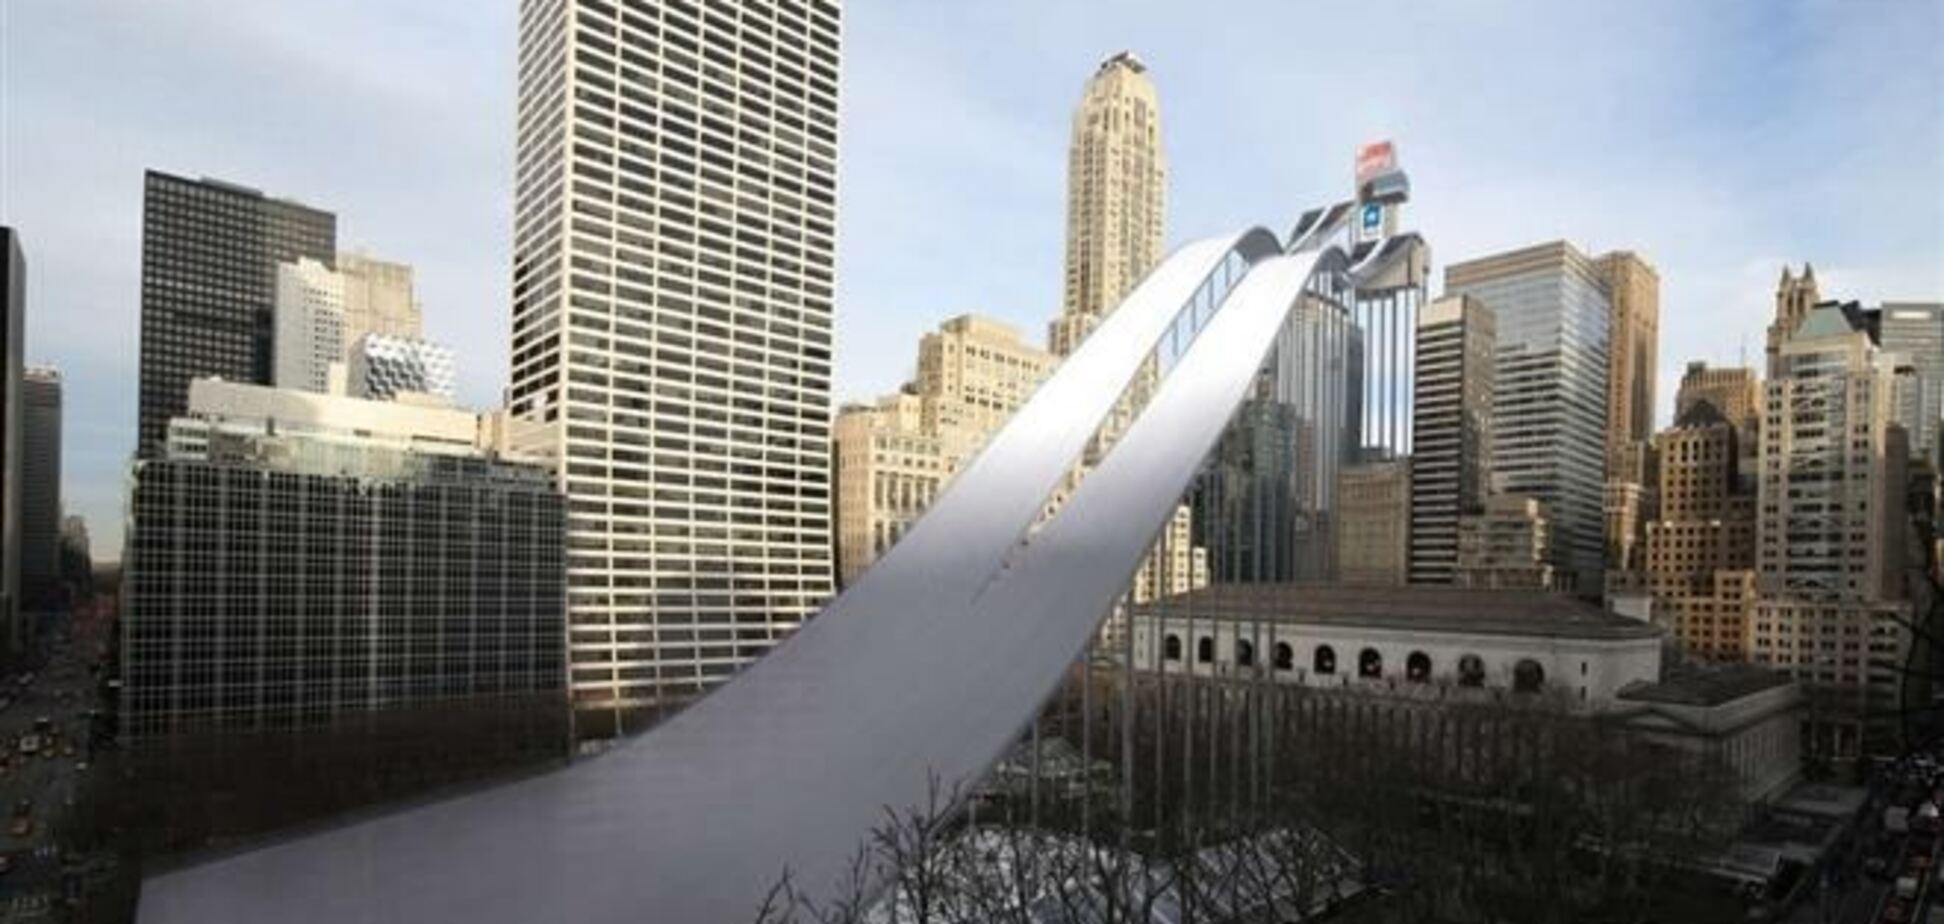 Сочи-2014. В США представили, как выглядели бы олимпийские объекты в центре Нью-Йорка